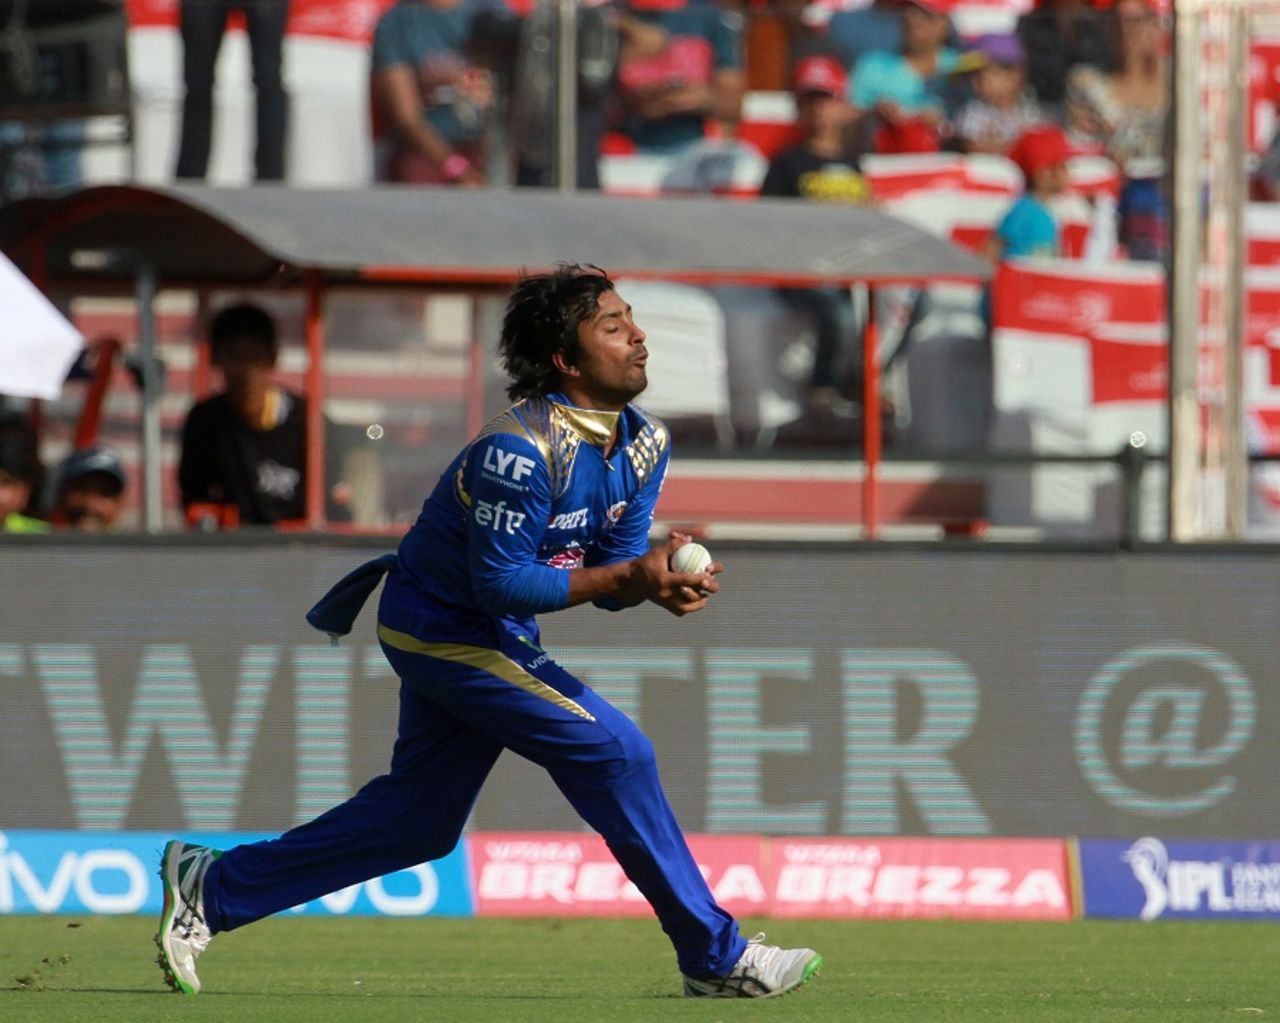 Ambati Rayudu takes a catch to dismiss Shreyas Iyer, Delhi Daredevils v Mumbai Indians, IPL 2016, Delhi, April 23, 2016